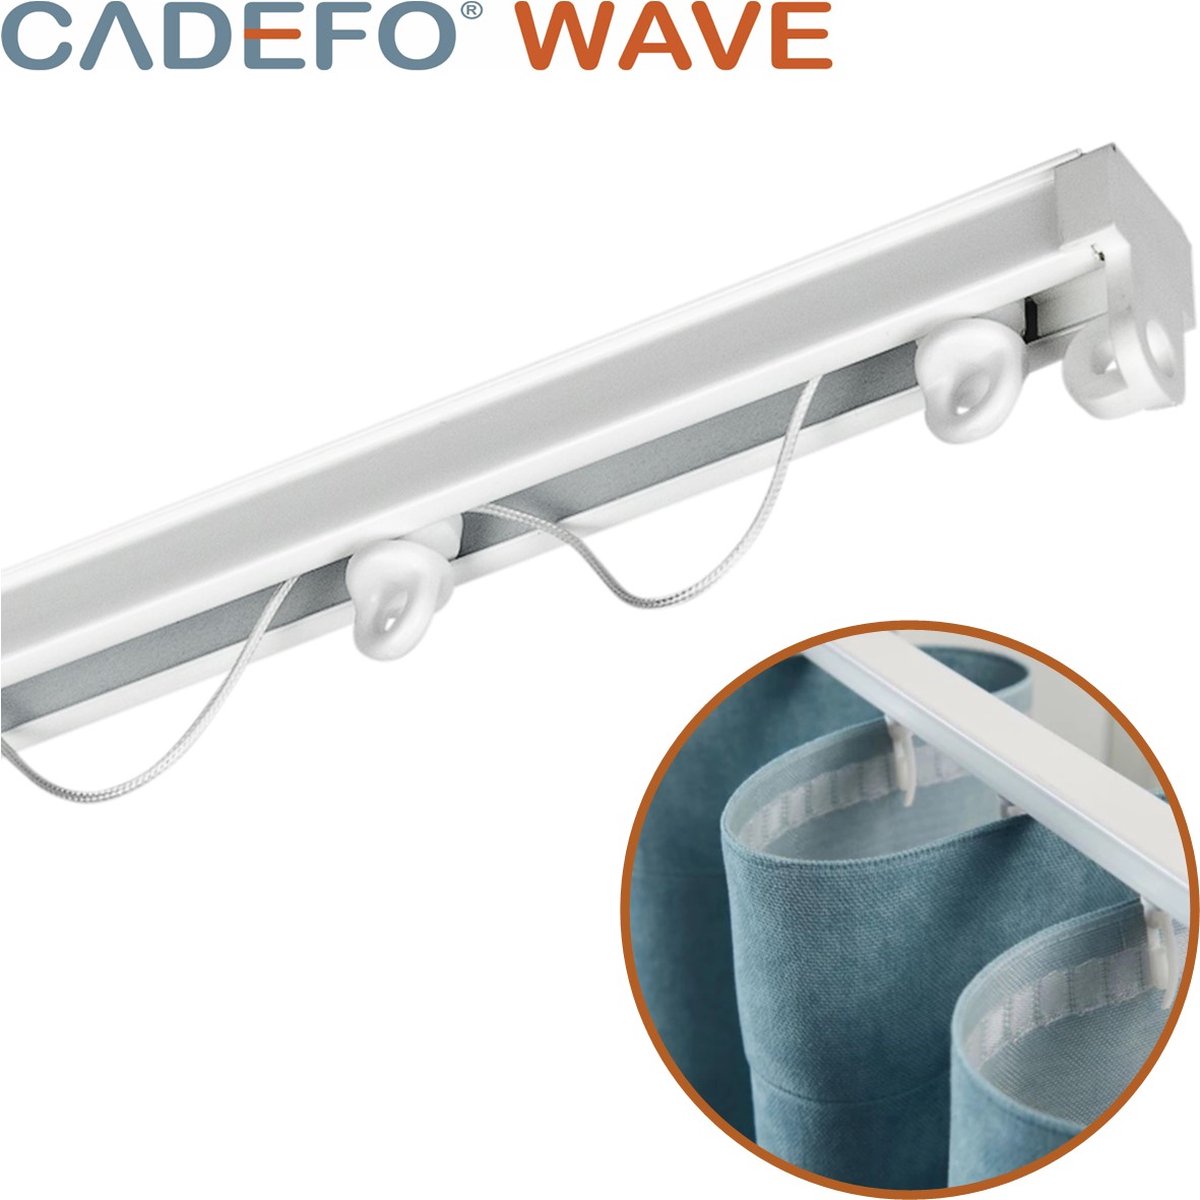 CADEFO WAVE (451 - 500 cm) Gordijnrails - Compleet op maat! - UIT 1 STUK - Leverbaar tot 6 meter - Plafondbevestiging - Lengte 460 cm